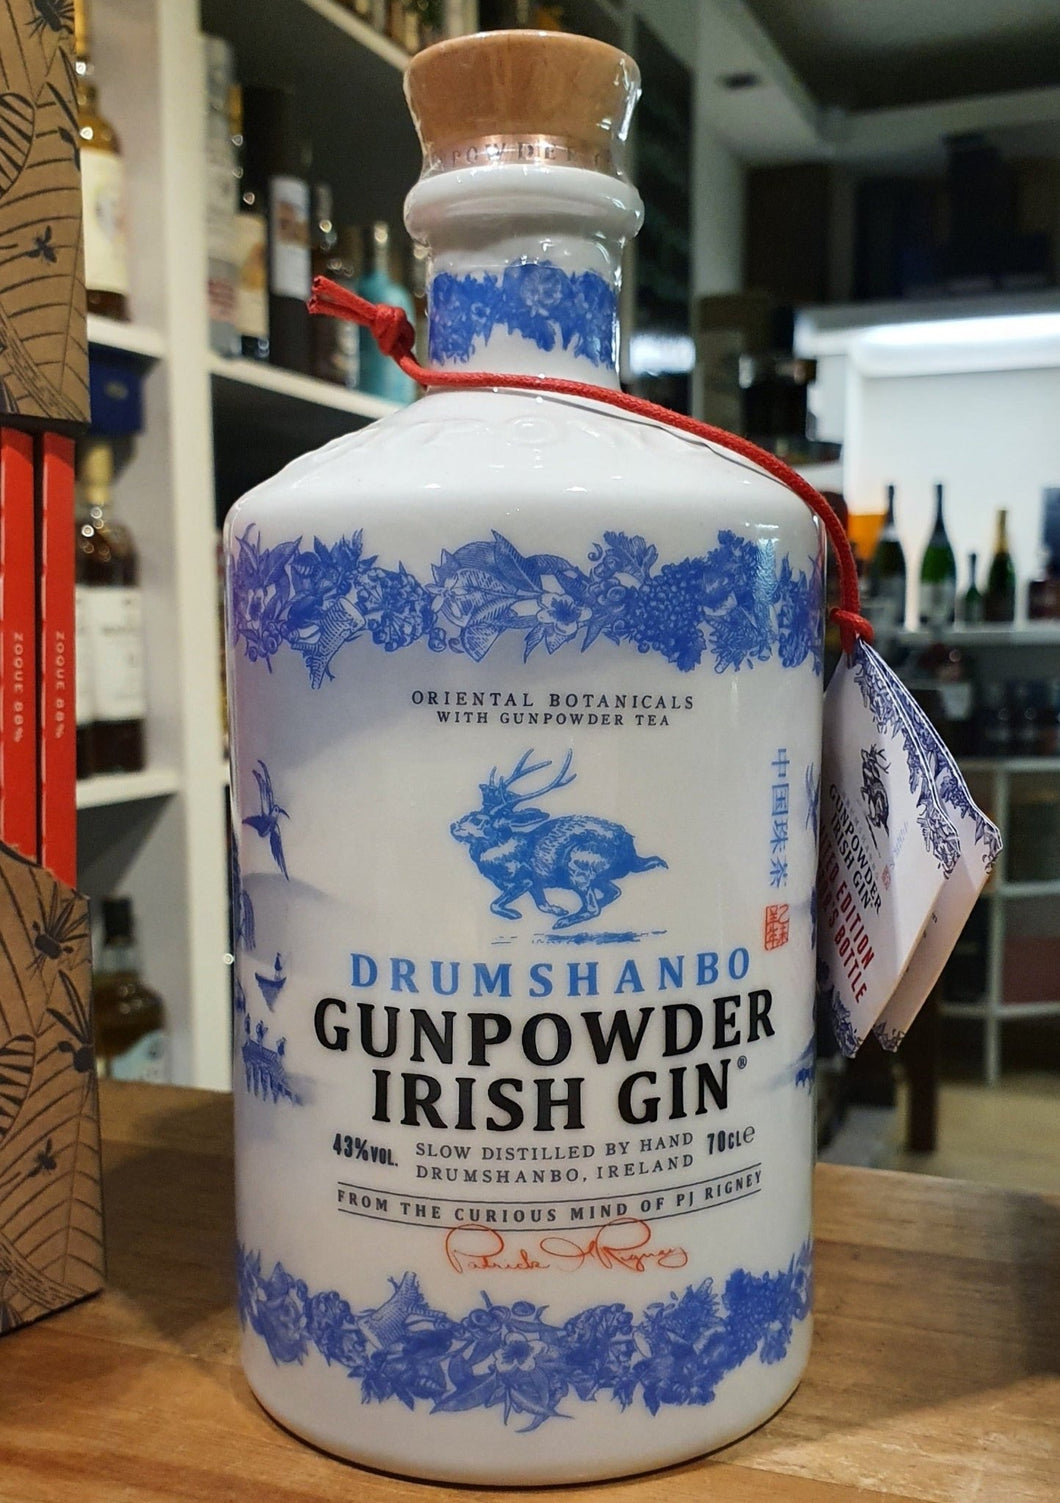 Drumshanbo Gunpowder Gin Collectors Bottle Edition 0,7l 43% vol. Porzelan Flasche limitierte Edition